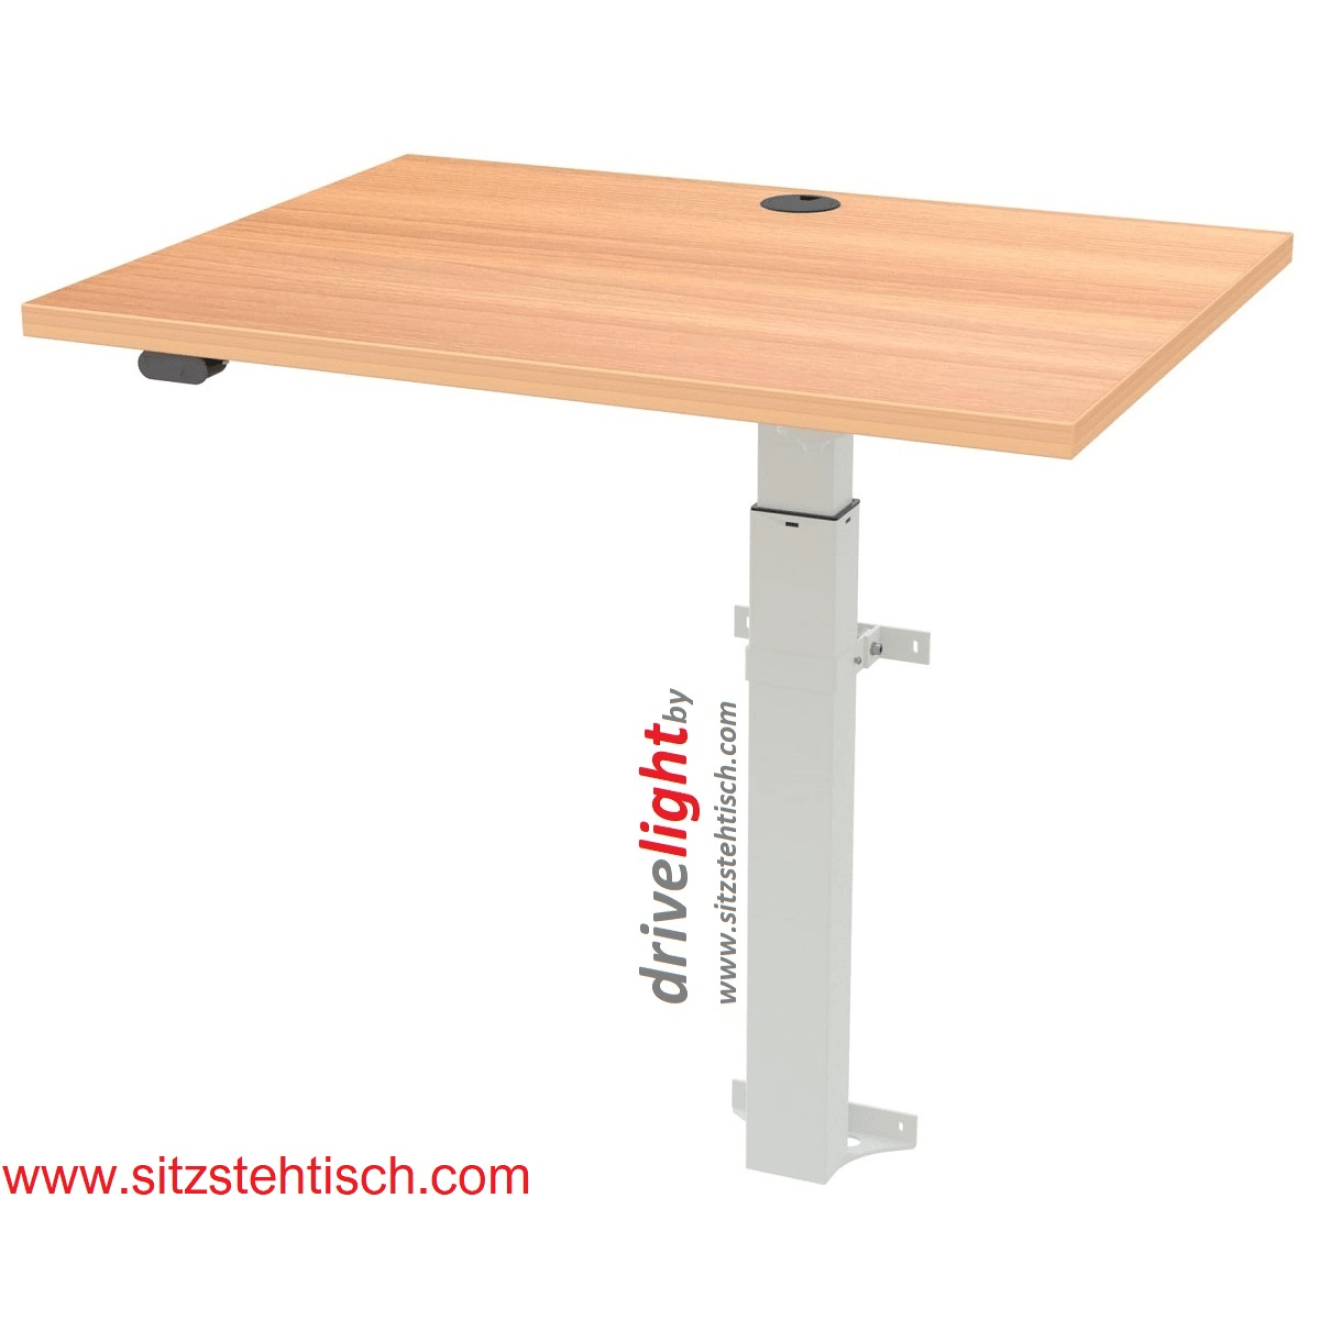 Stehpult - drivelight - (Wandmontage) elektrisch höhenverstellbar mit Tischplatte 80 x 60 cm in Buche oder Weiß - Höhe 72 bis 120 cm - Optional : Akku - Conset